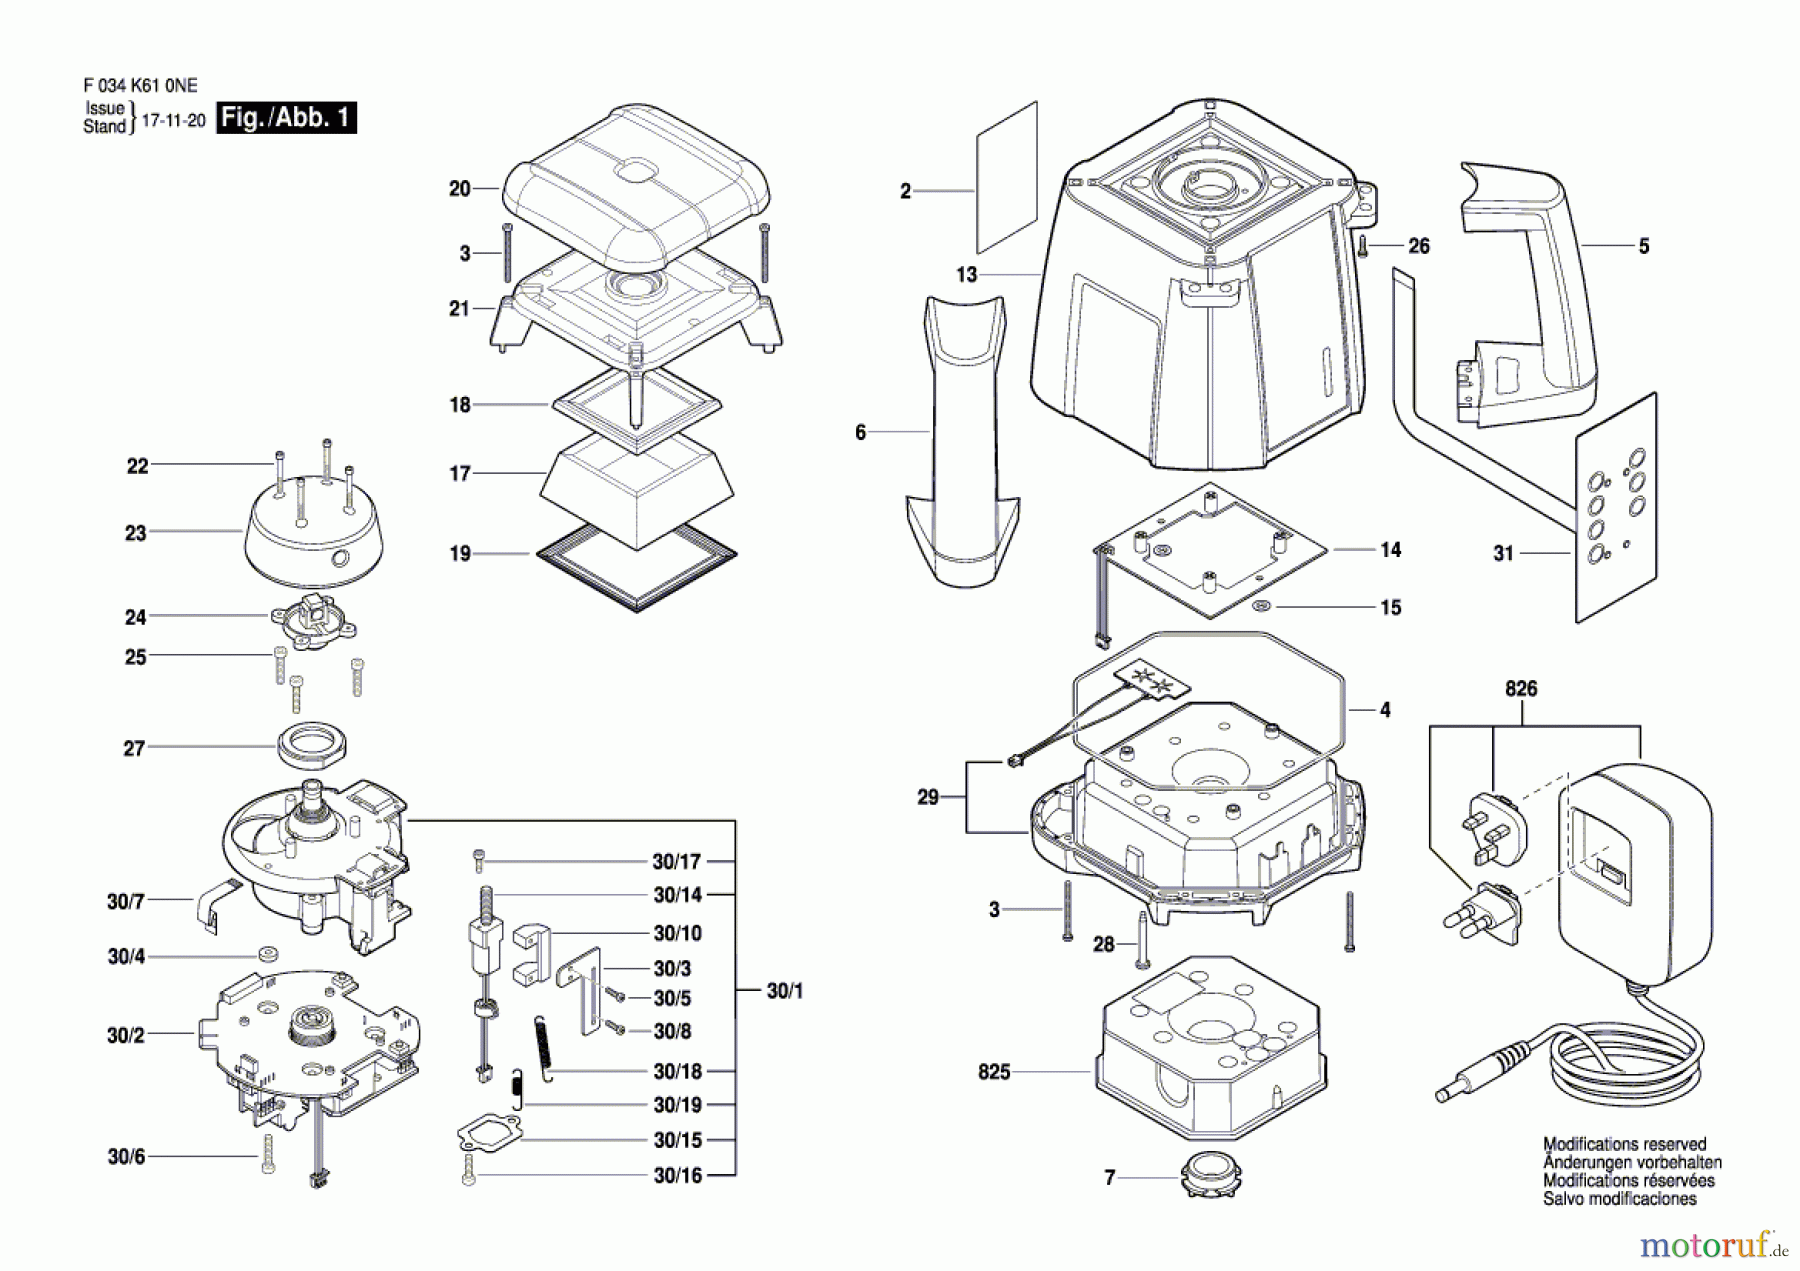  Bosch Werkzeug Laser RL25H Seite 1